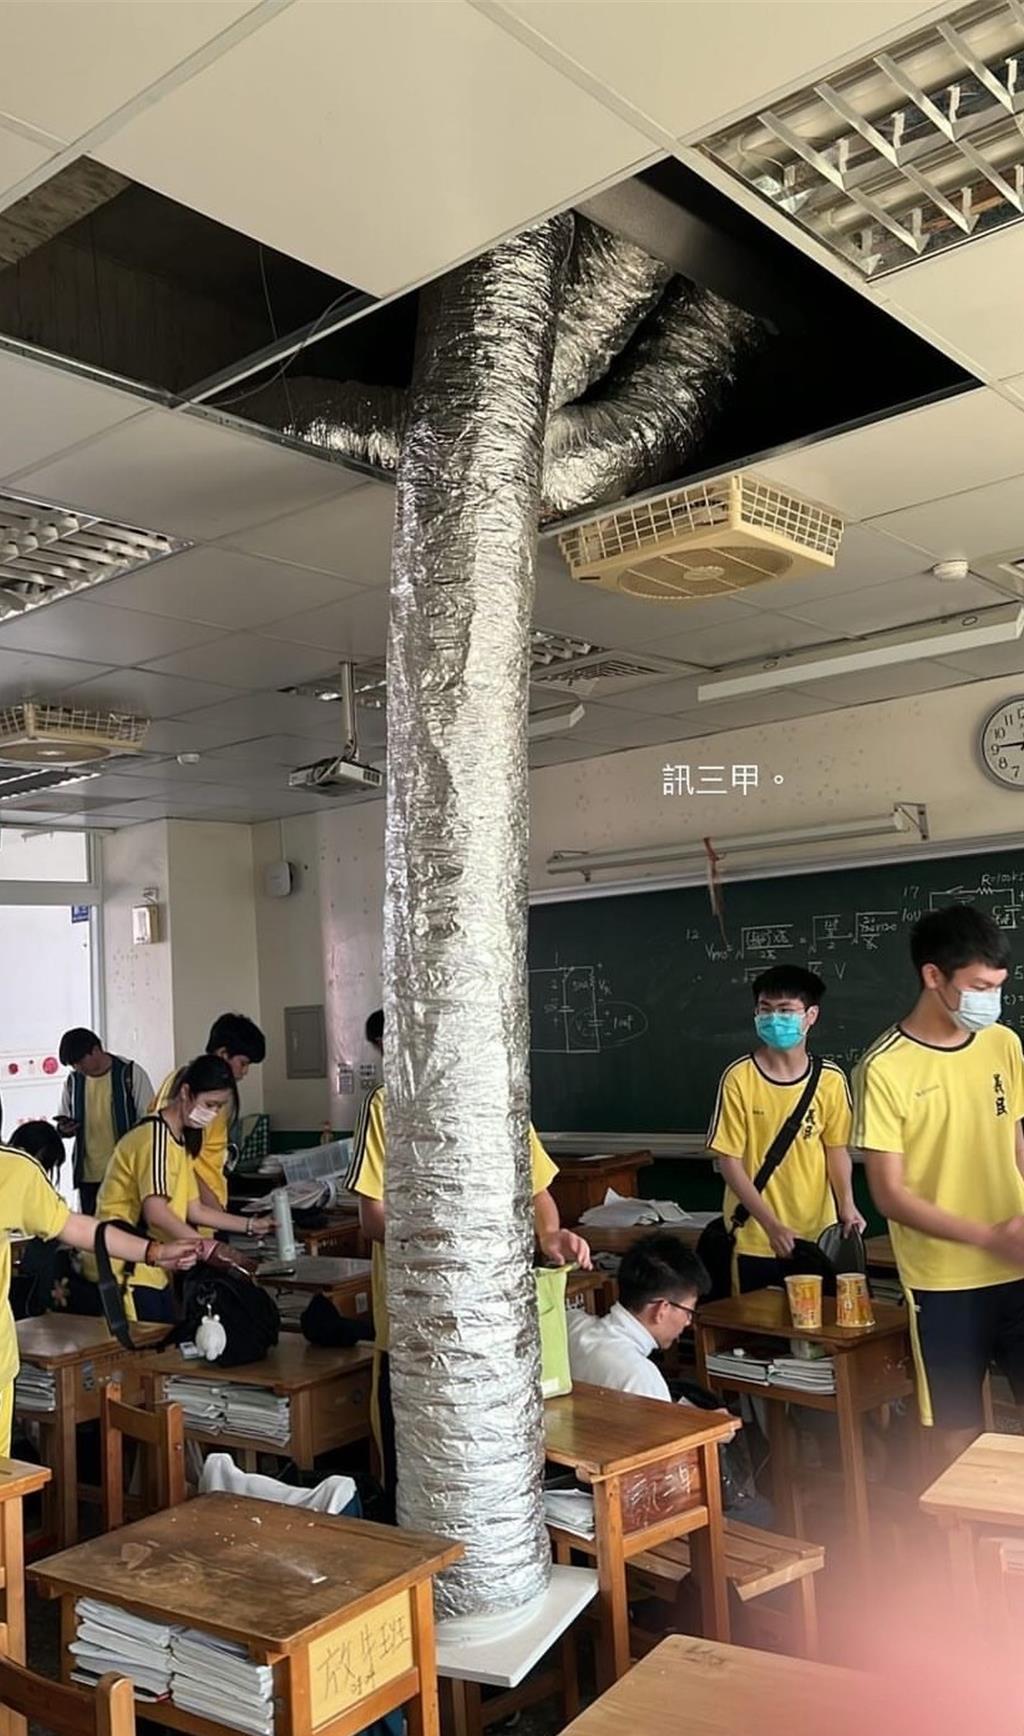 新竹义民中学紧急停课 校舍地板龟裂、天花板钢筋扭曲